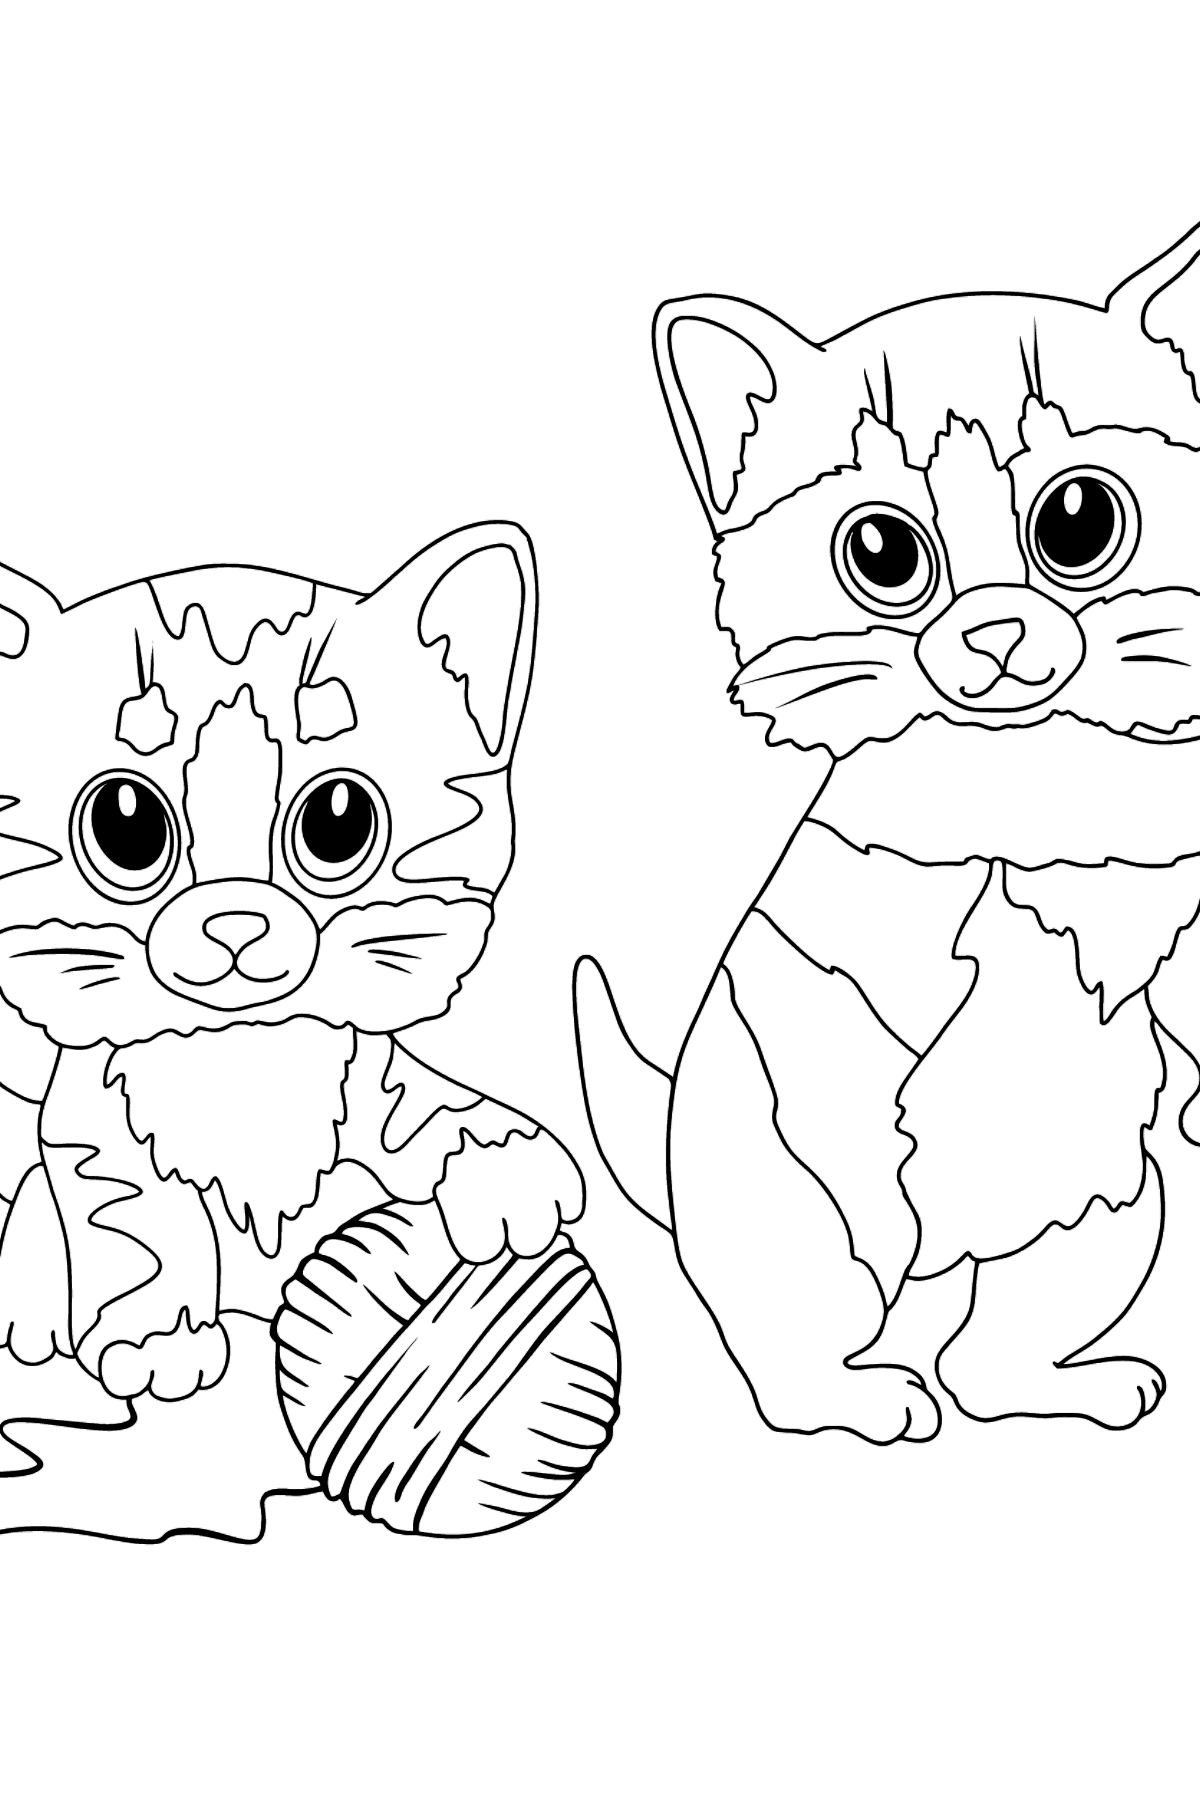 Disegno da colorare di gattini e un gomitolo di filo - Disegni da colorare per bambini